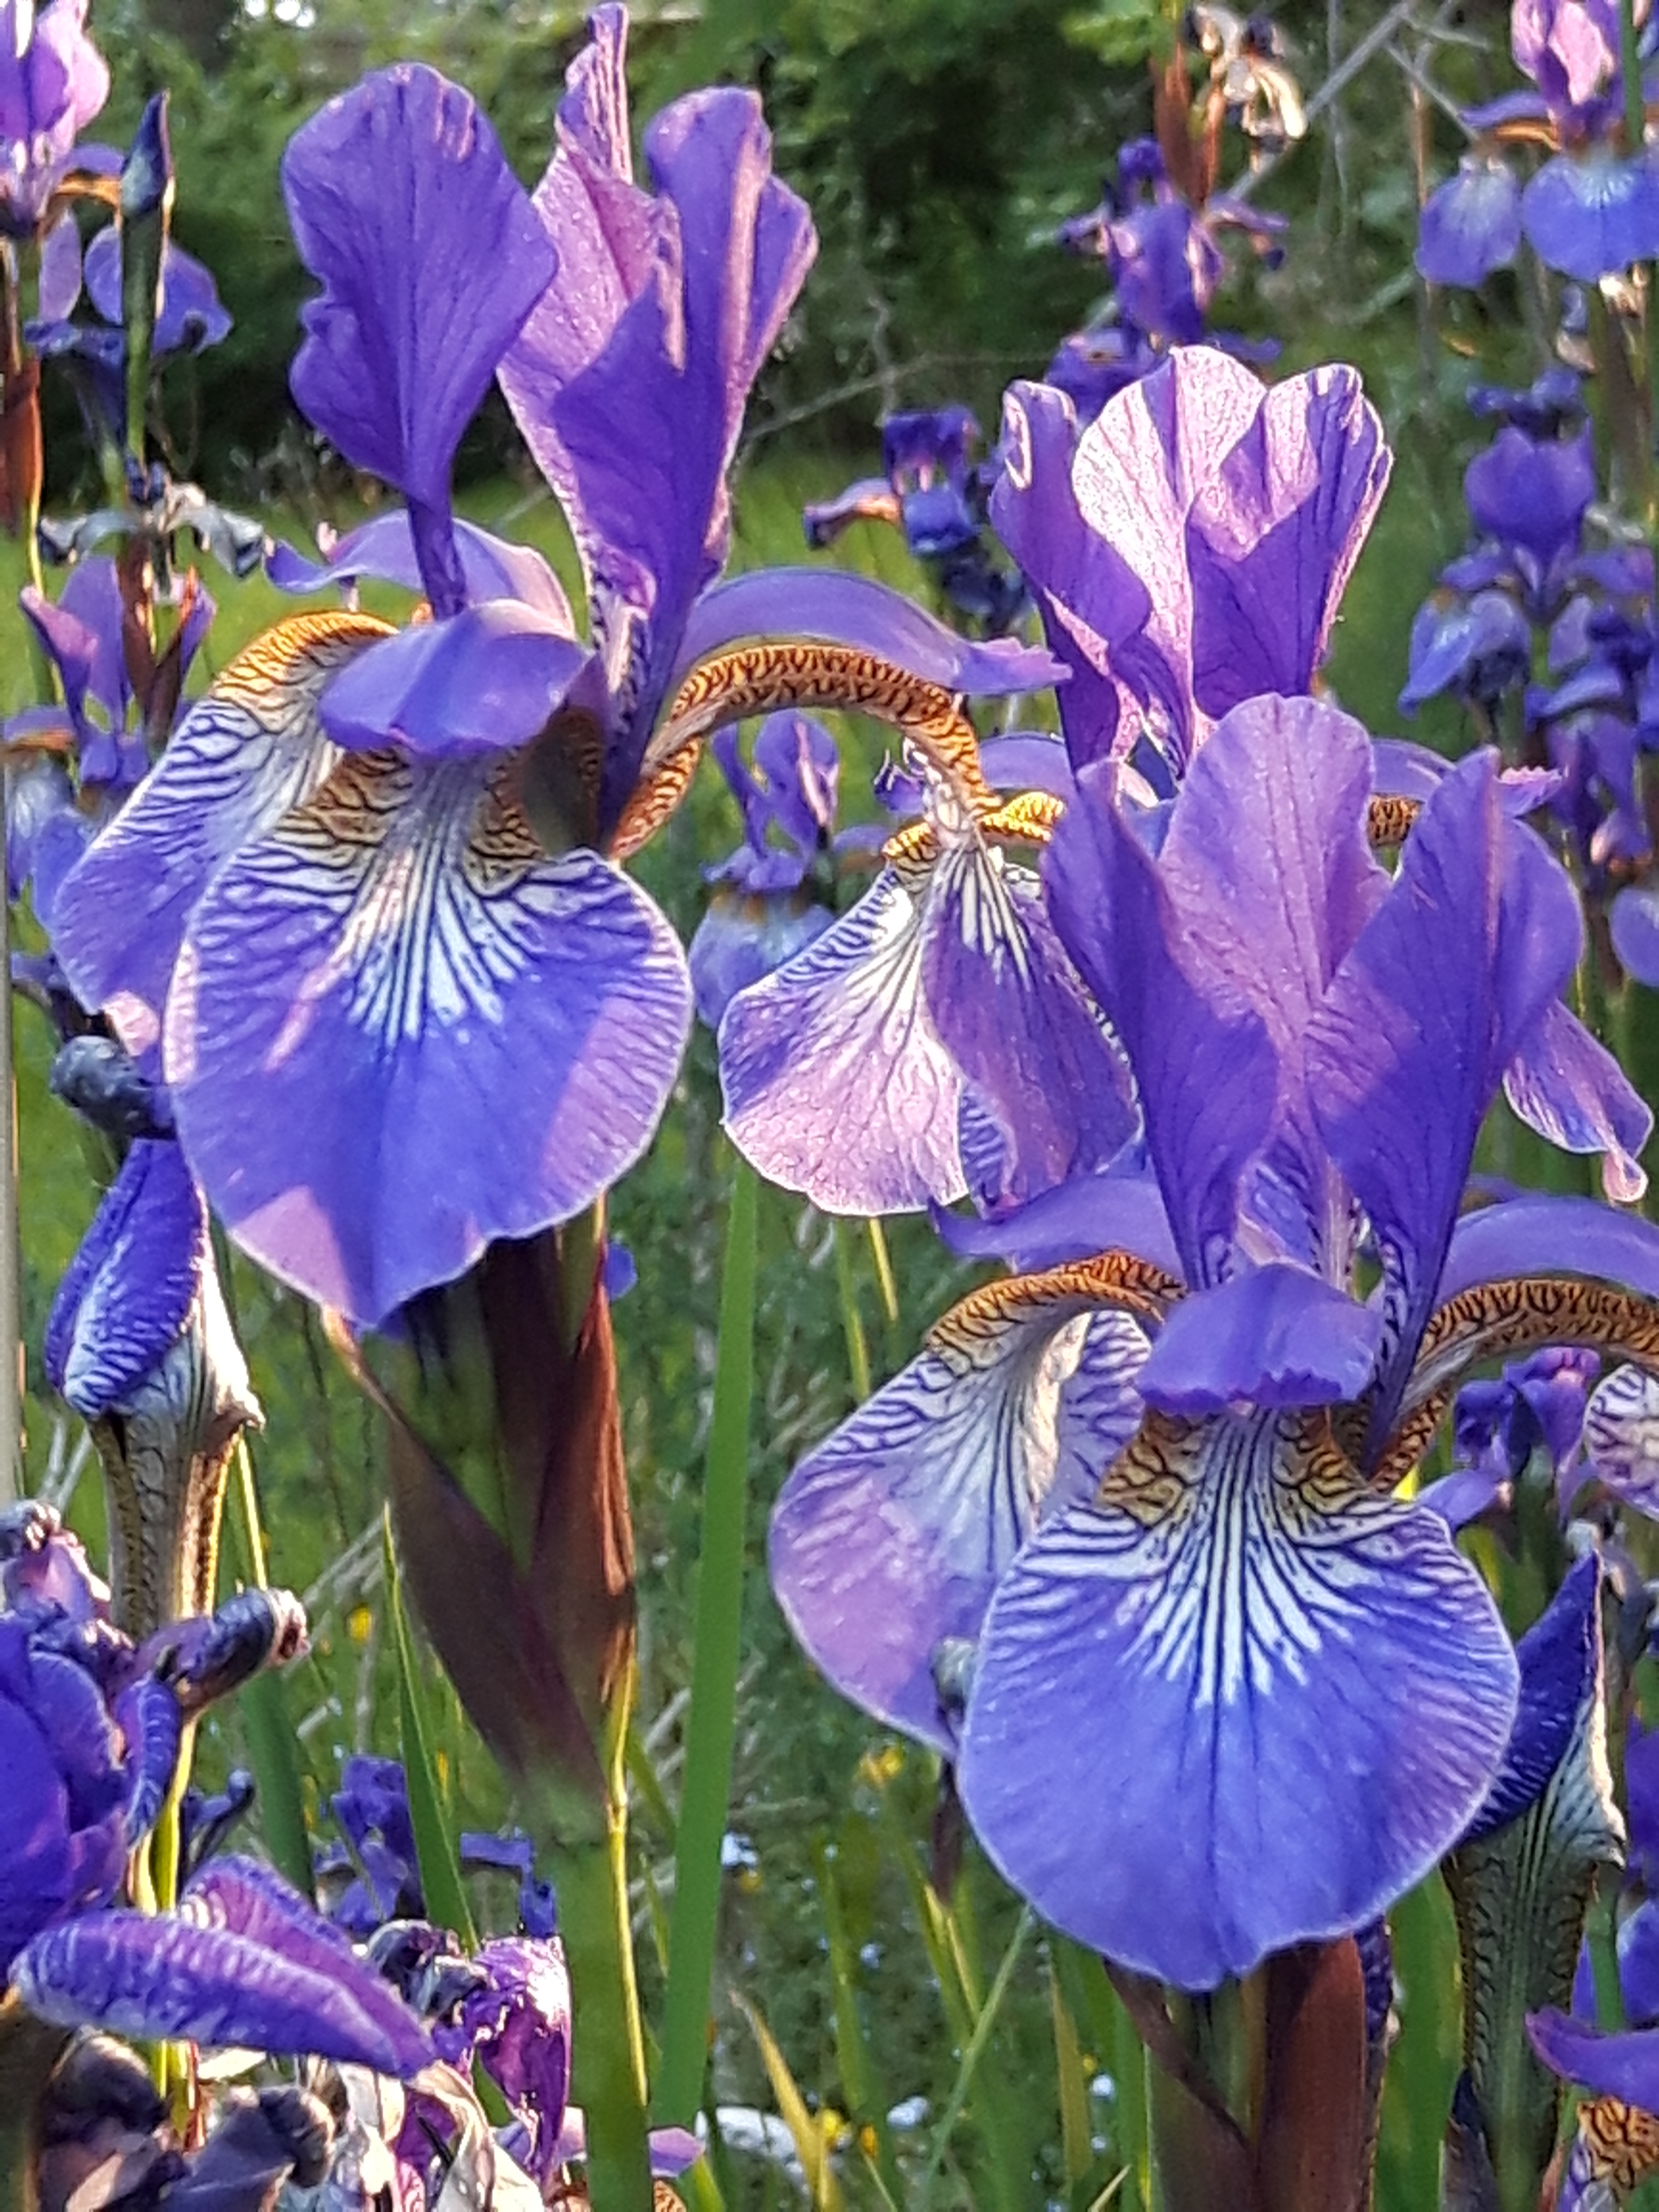 Iris closeup